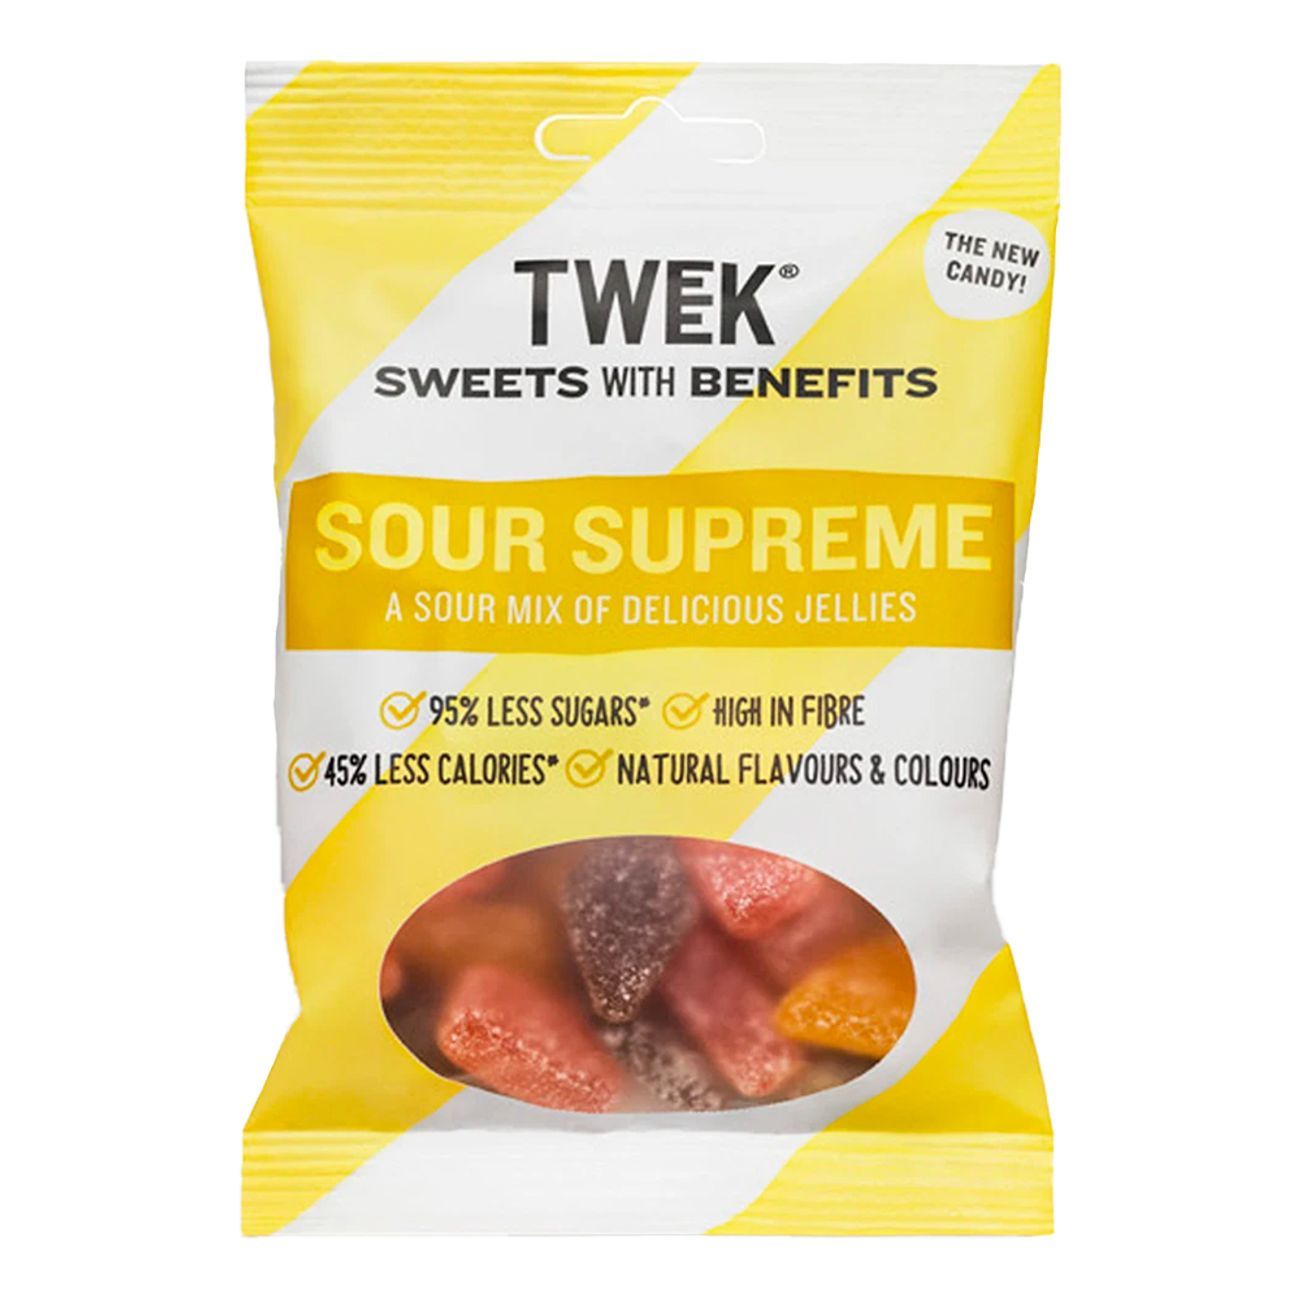 tweek-sour-supreme-92754-1